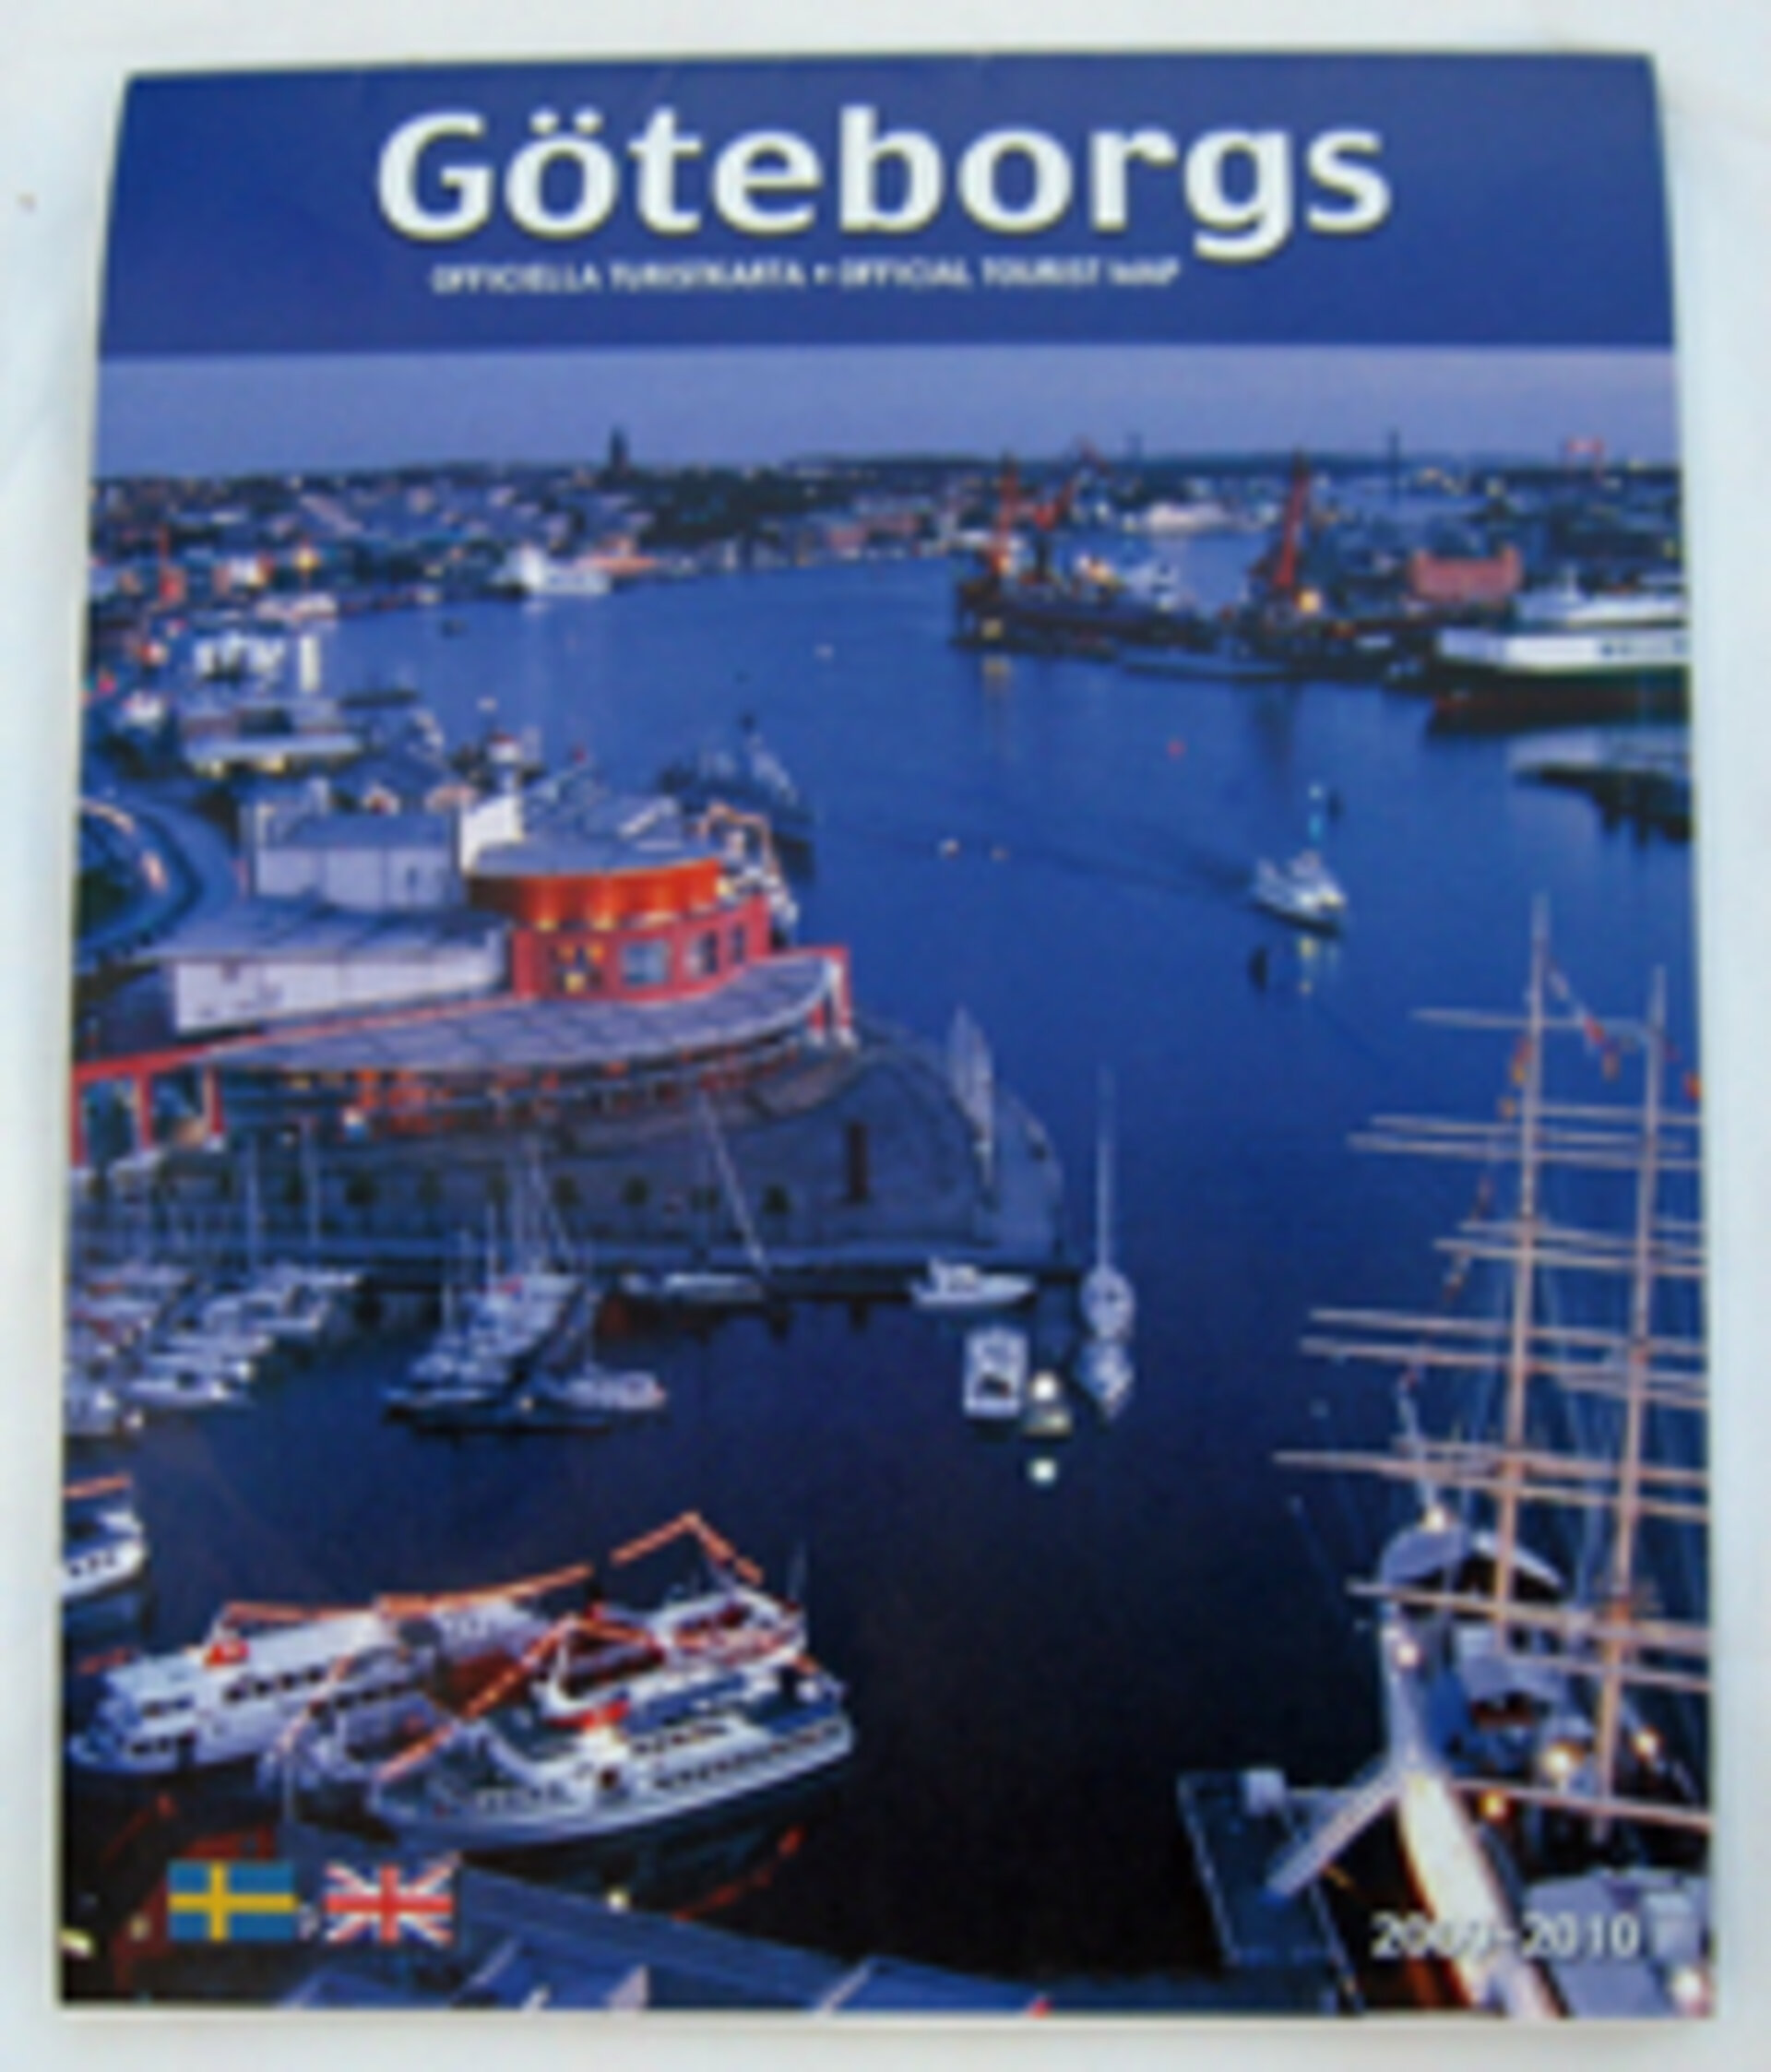 Göteborgskarta